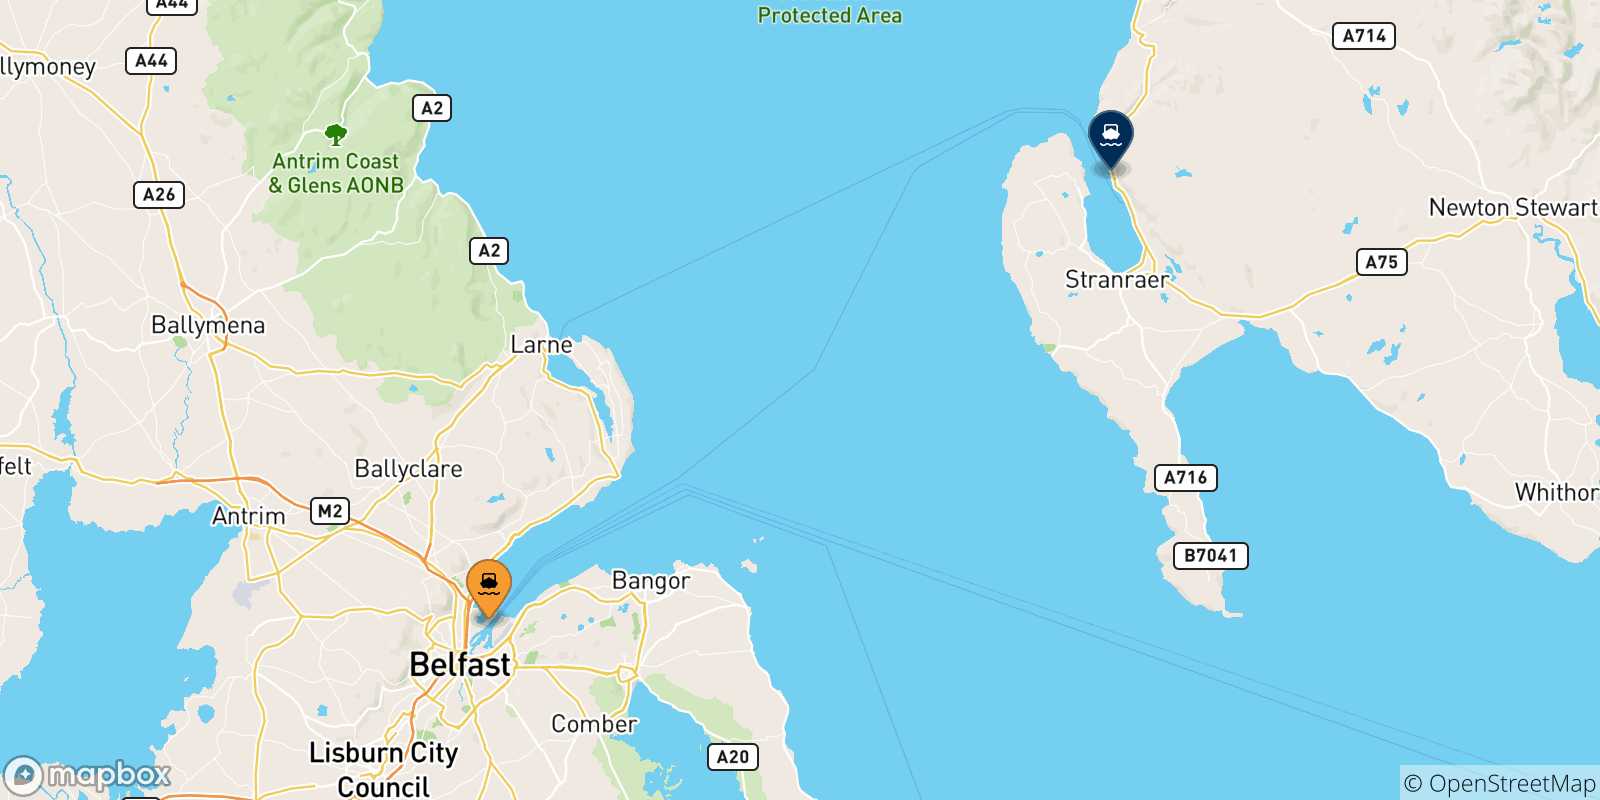 Mappa dei porti collegati con la Scozia